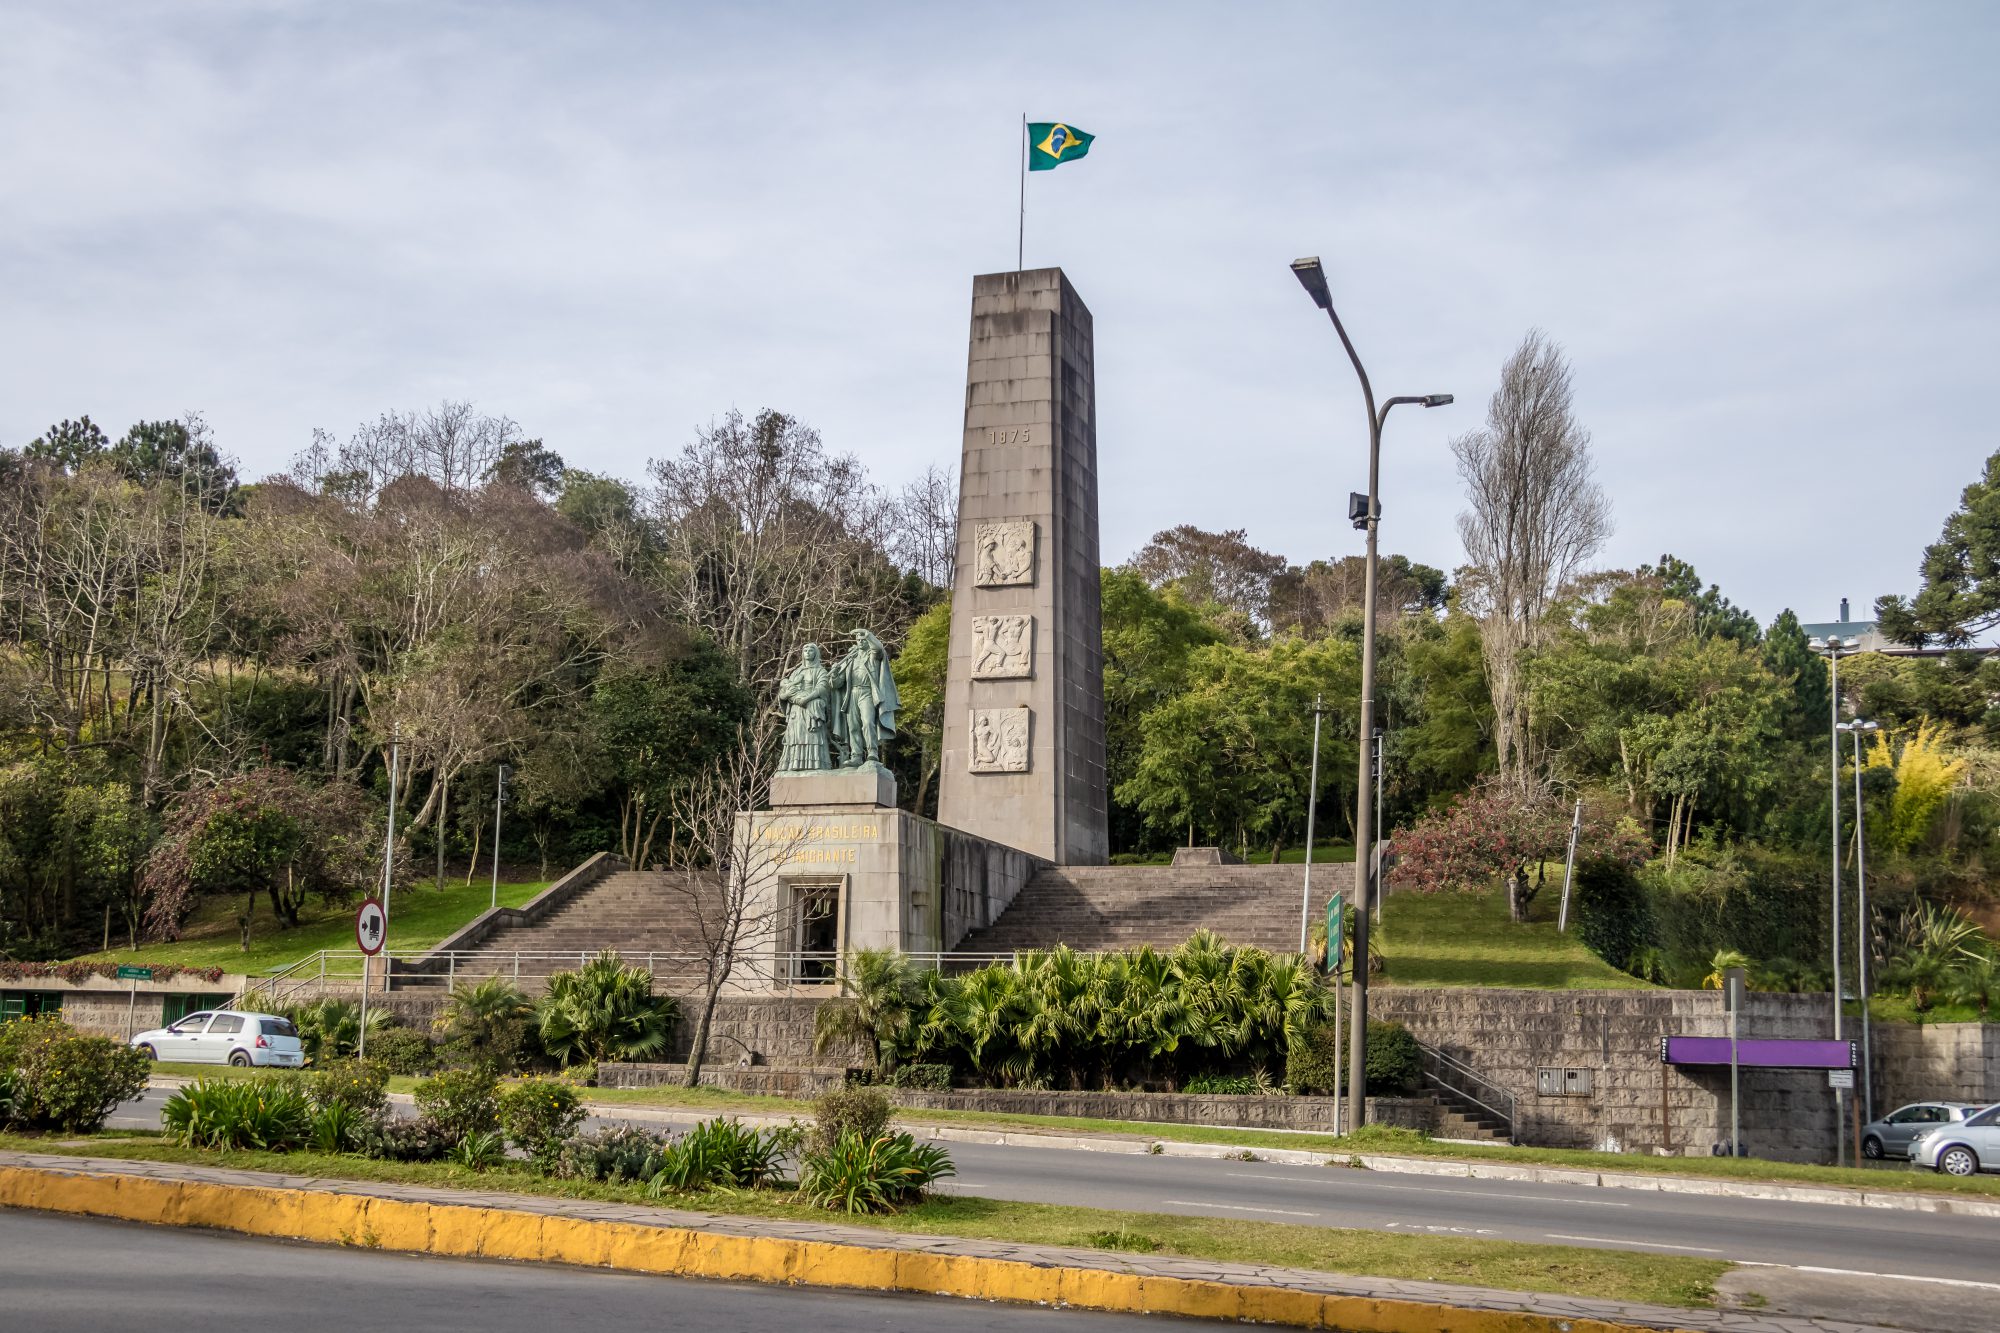 Monumento Nacional ao Imigrante, Caxias do Sul